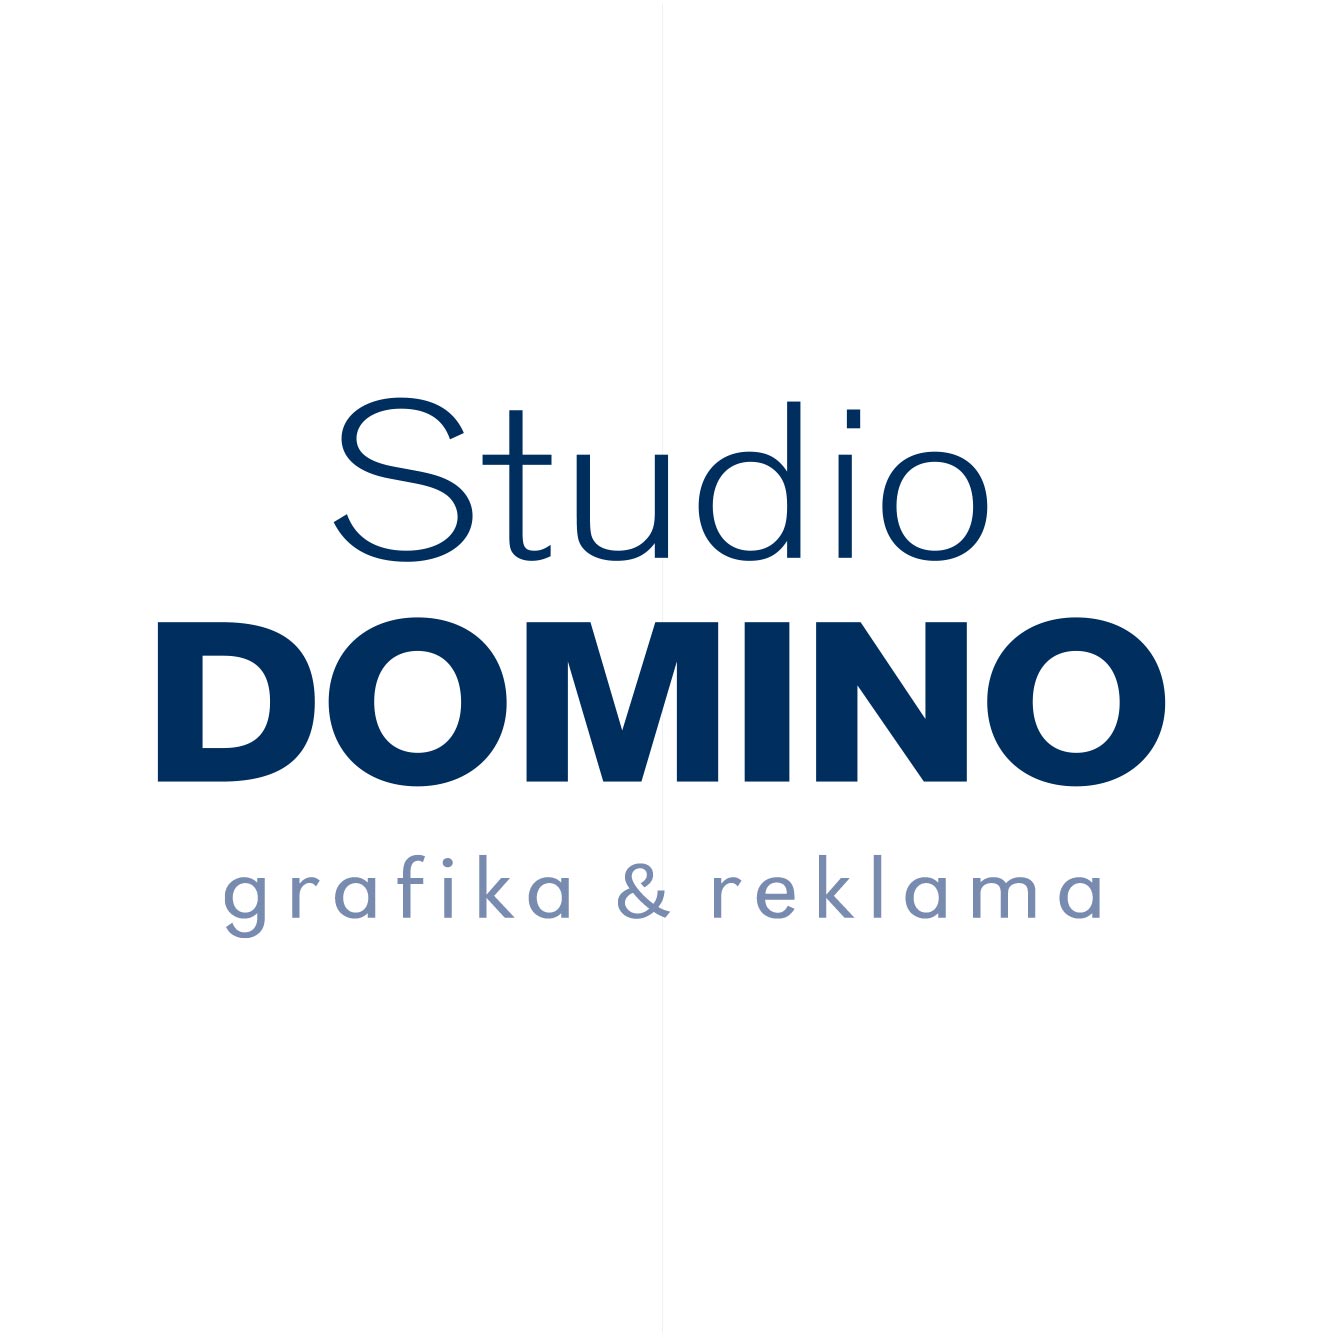 studiodomino_tisk